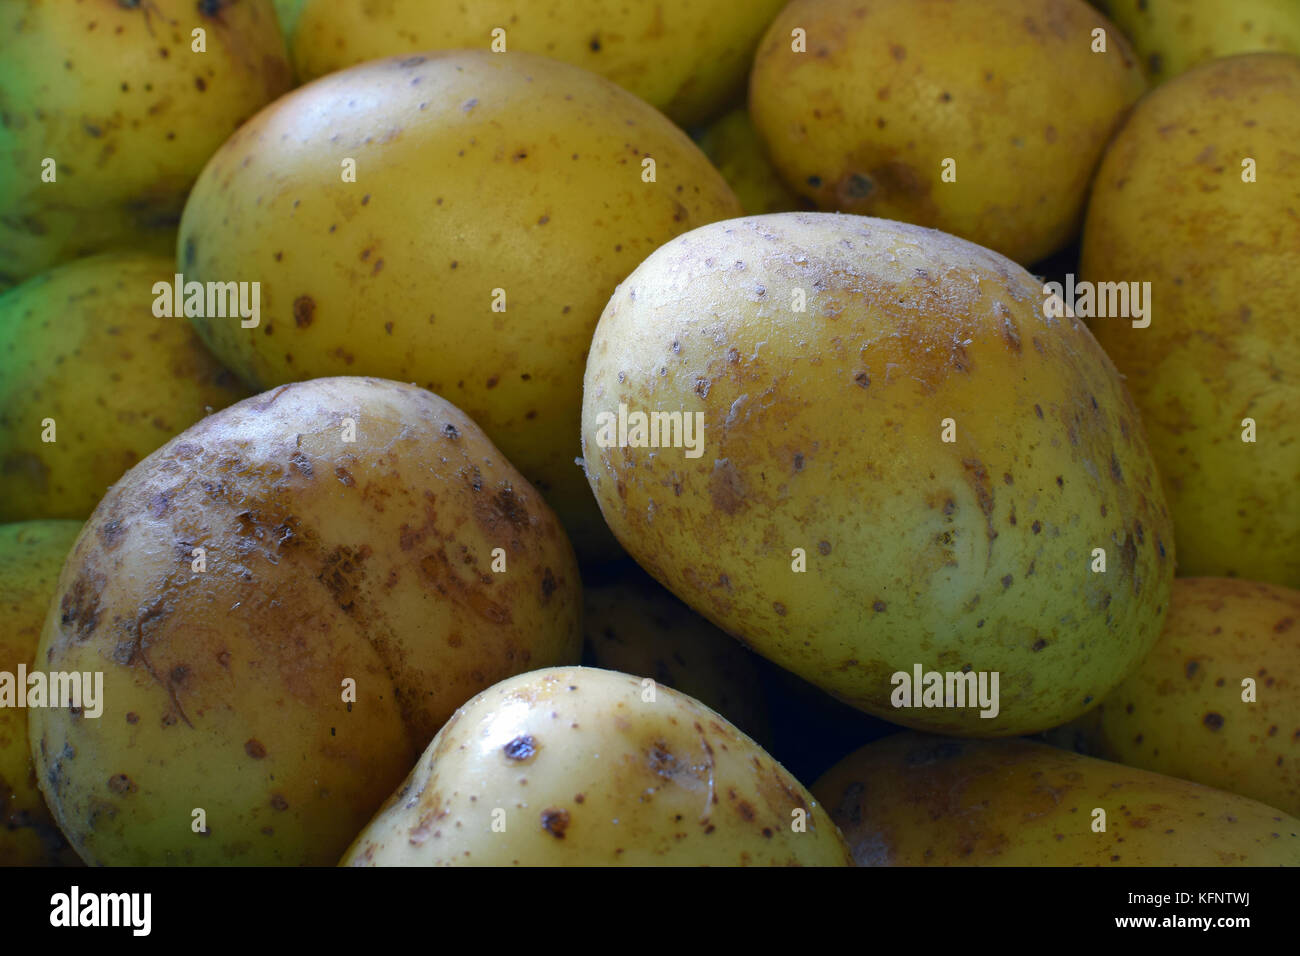 Potato close up. Ripe and raw potatoes background. Stock Photo